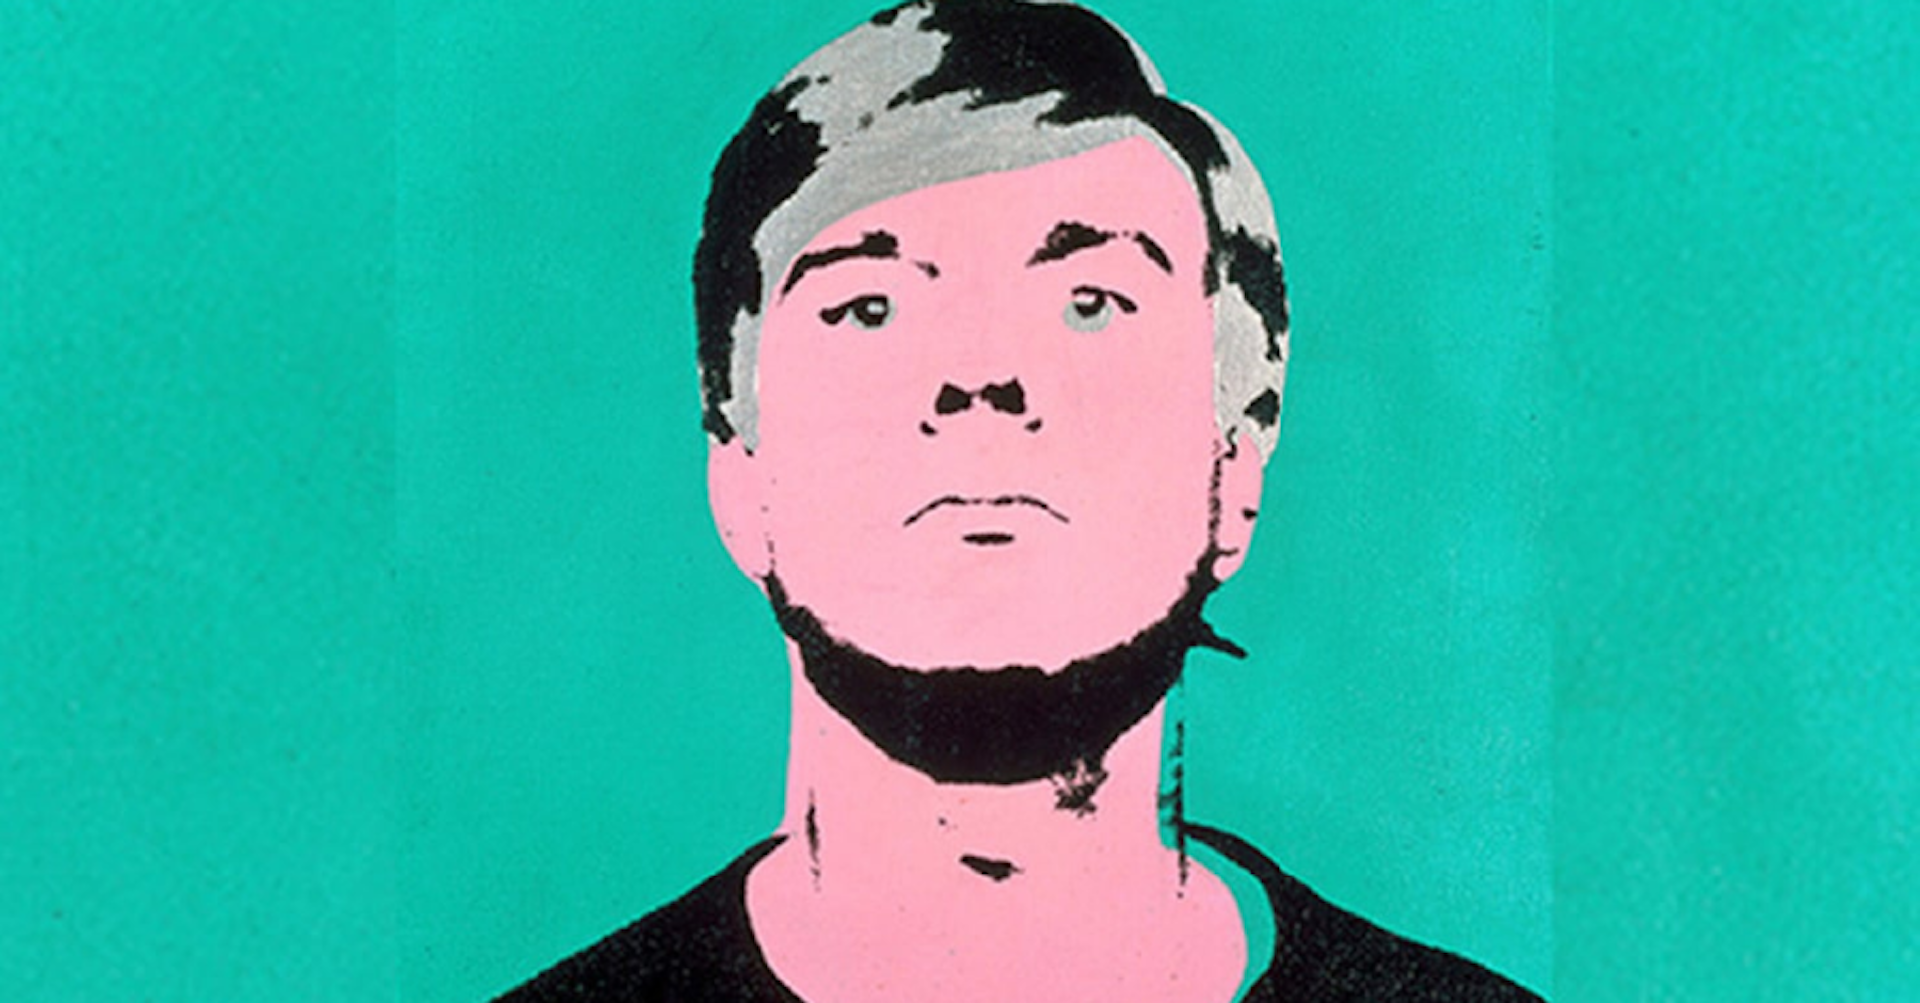 Artista de la semana: Andy Warhol. Conoce sus obras